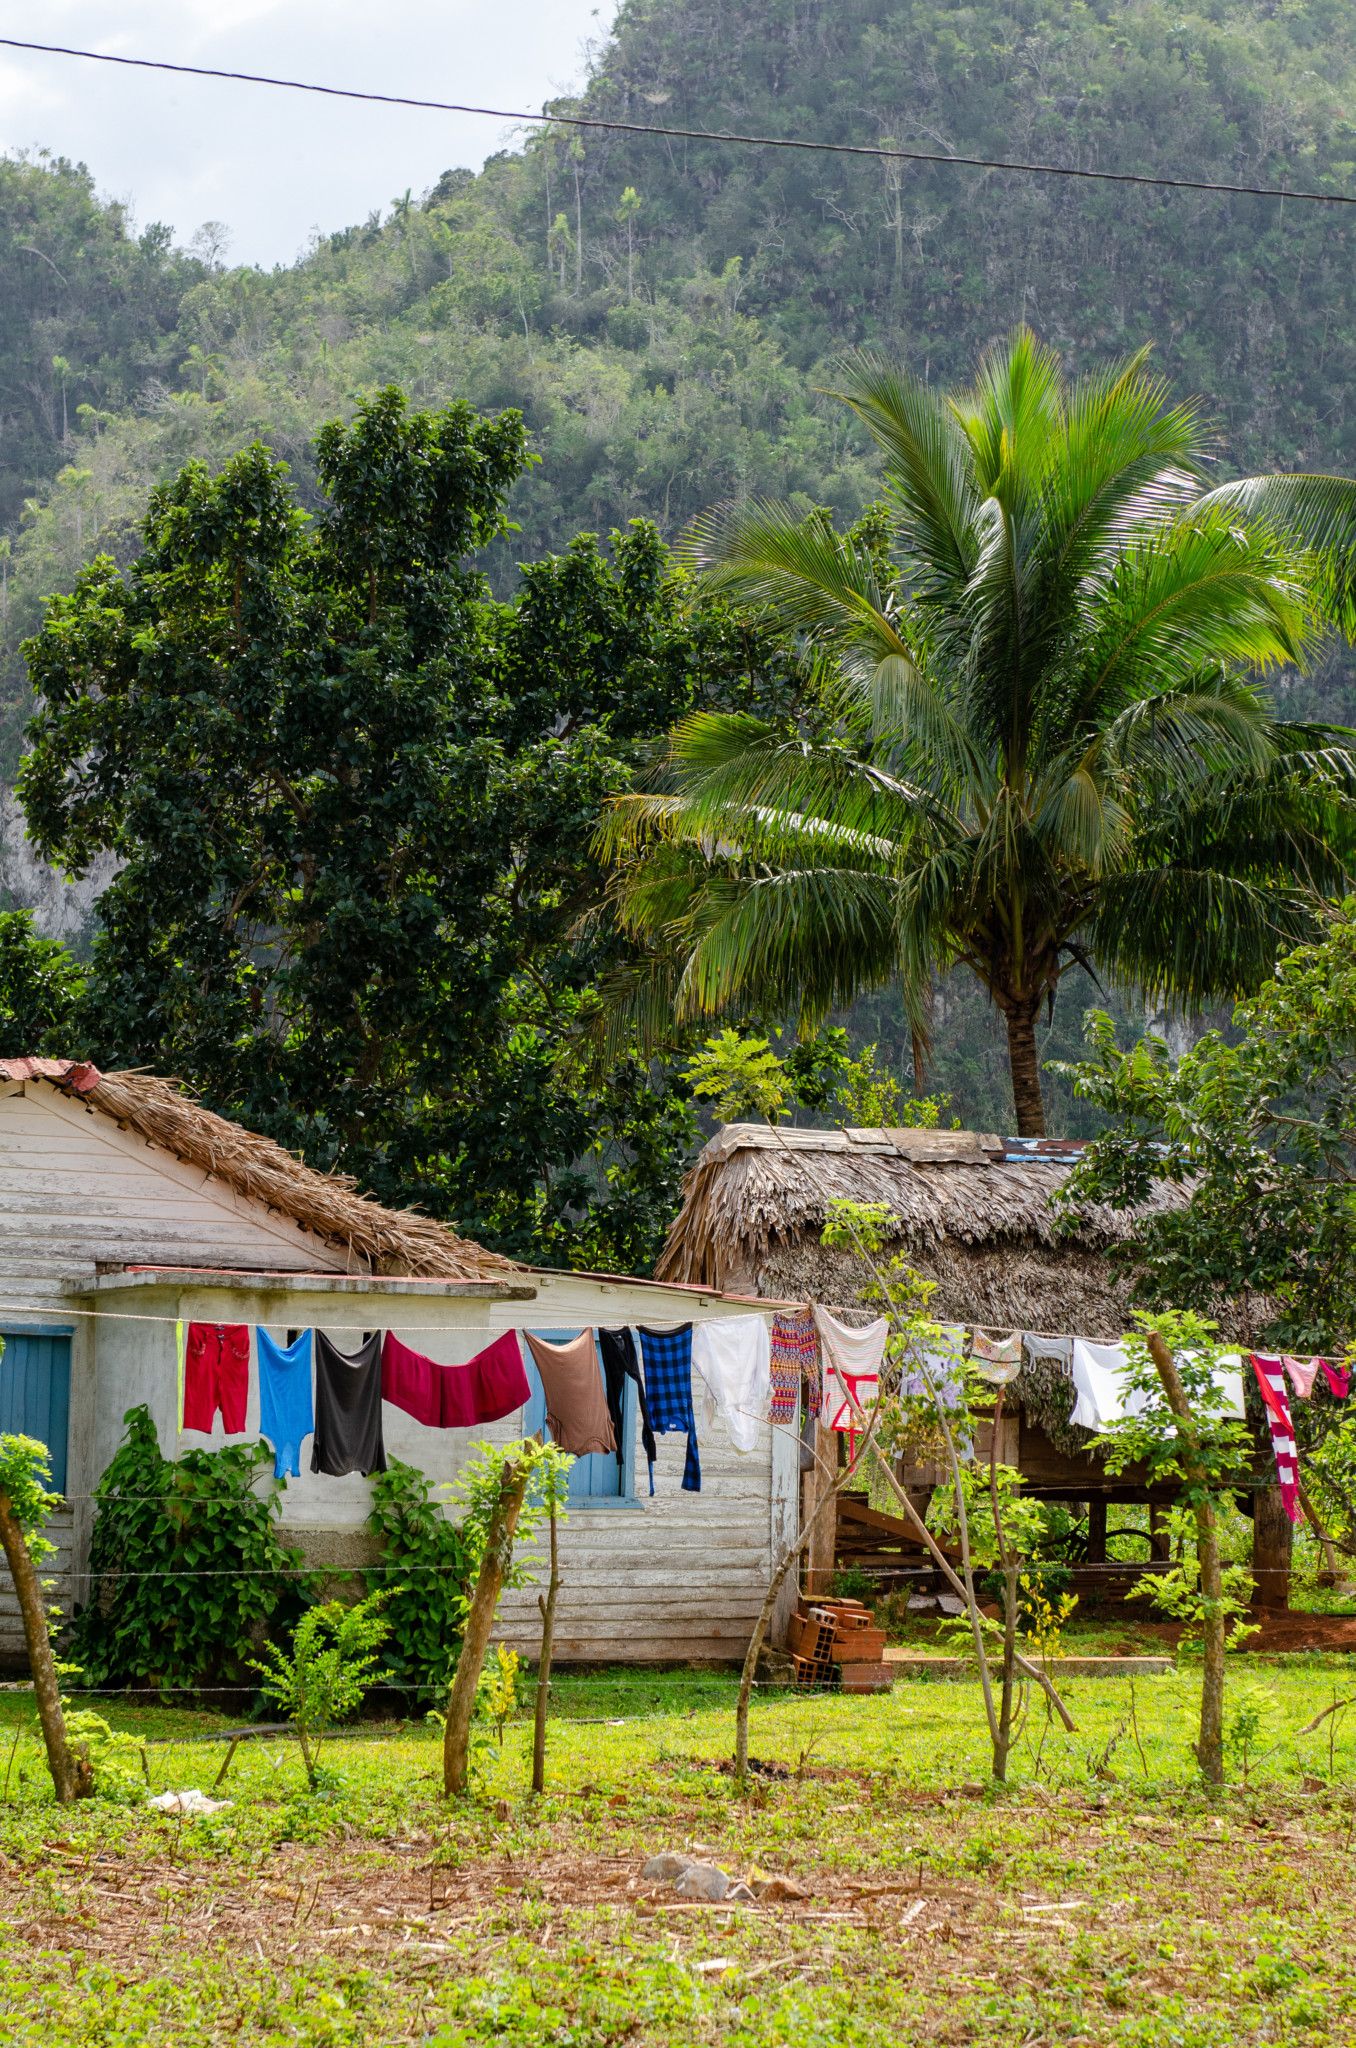 Wäsche hängt vor einem versteckten Haus in Kuba